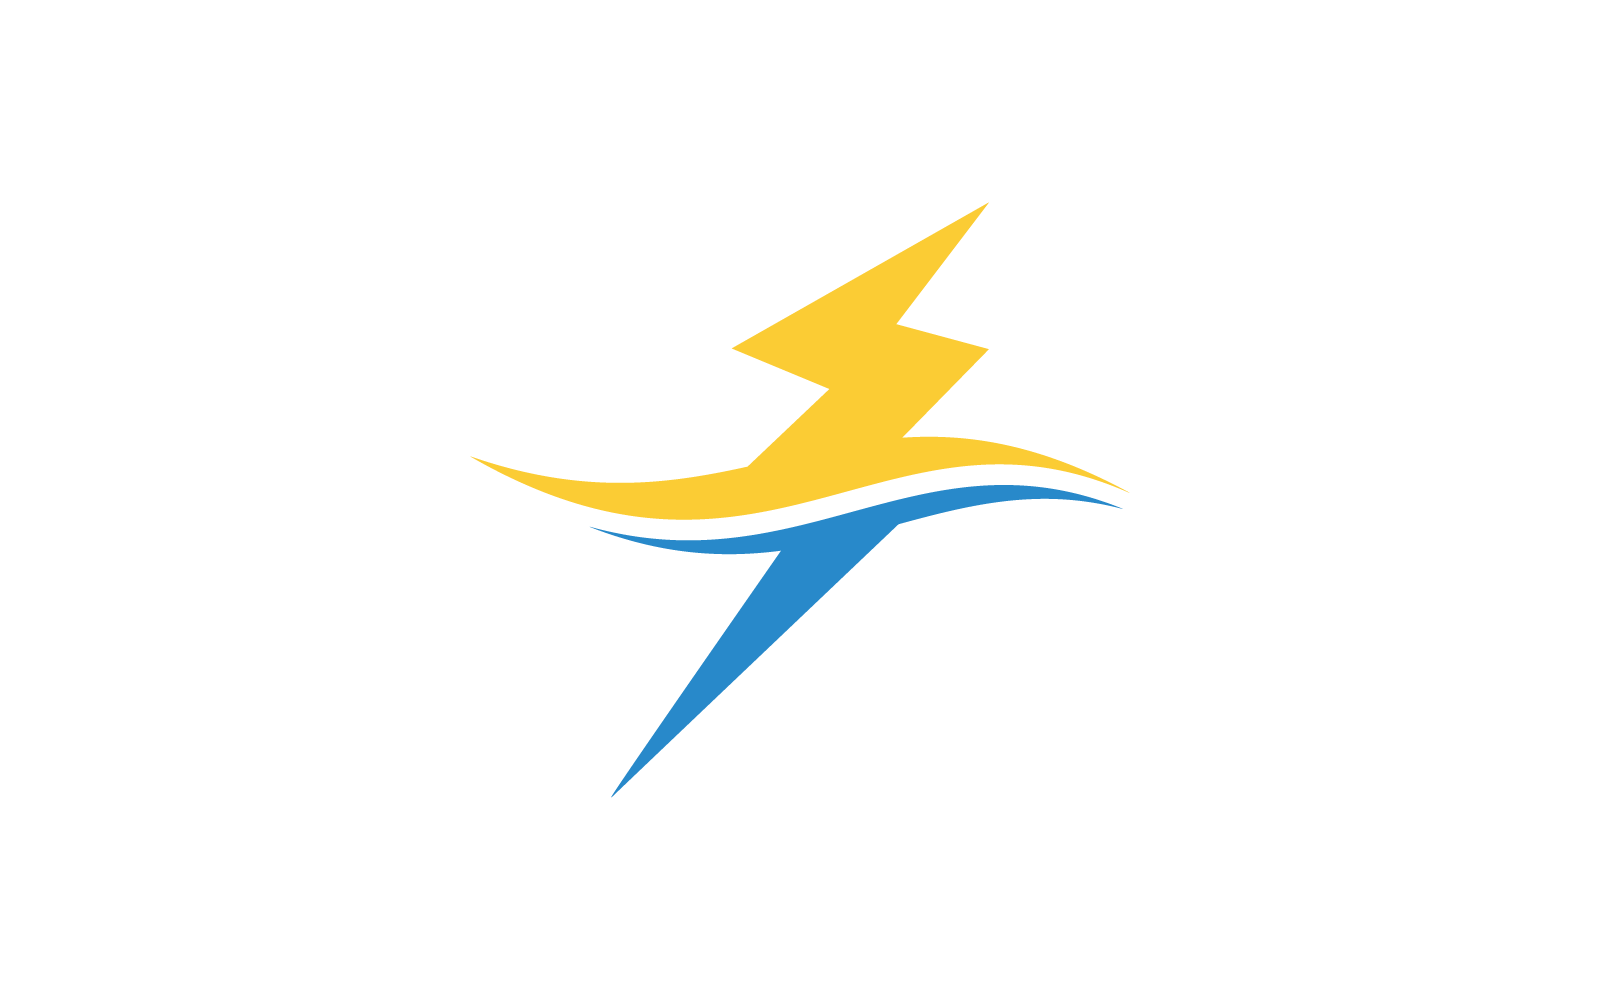 Power lightning power energy logo vector design template